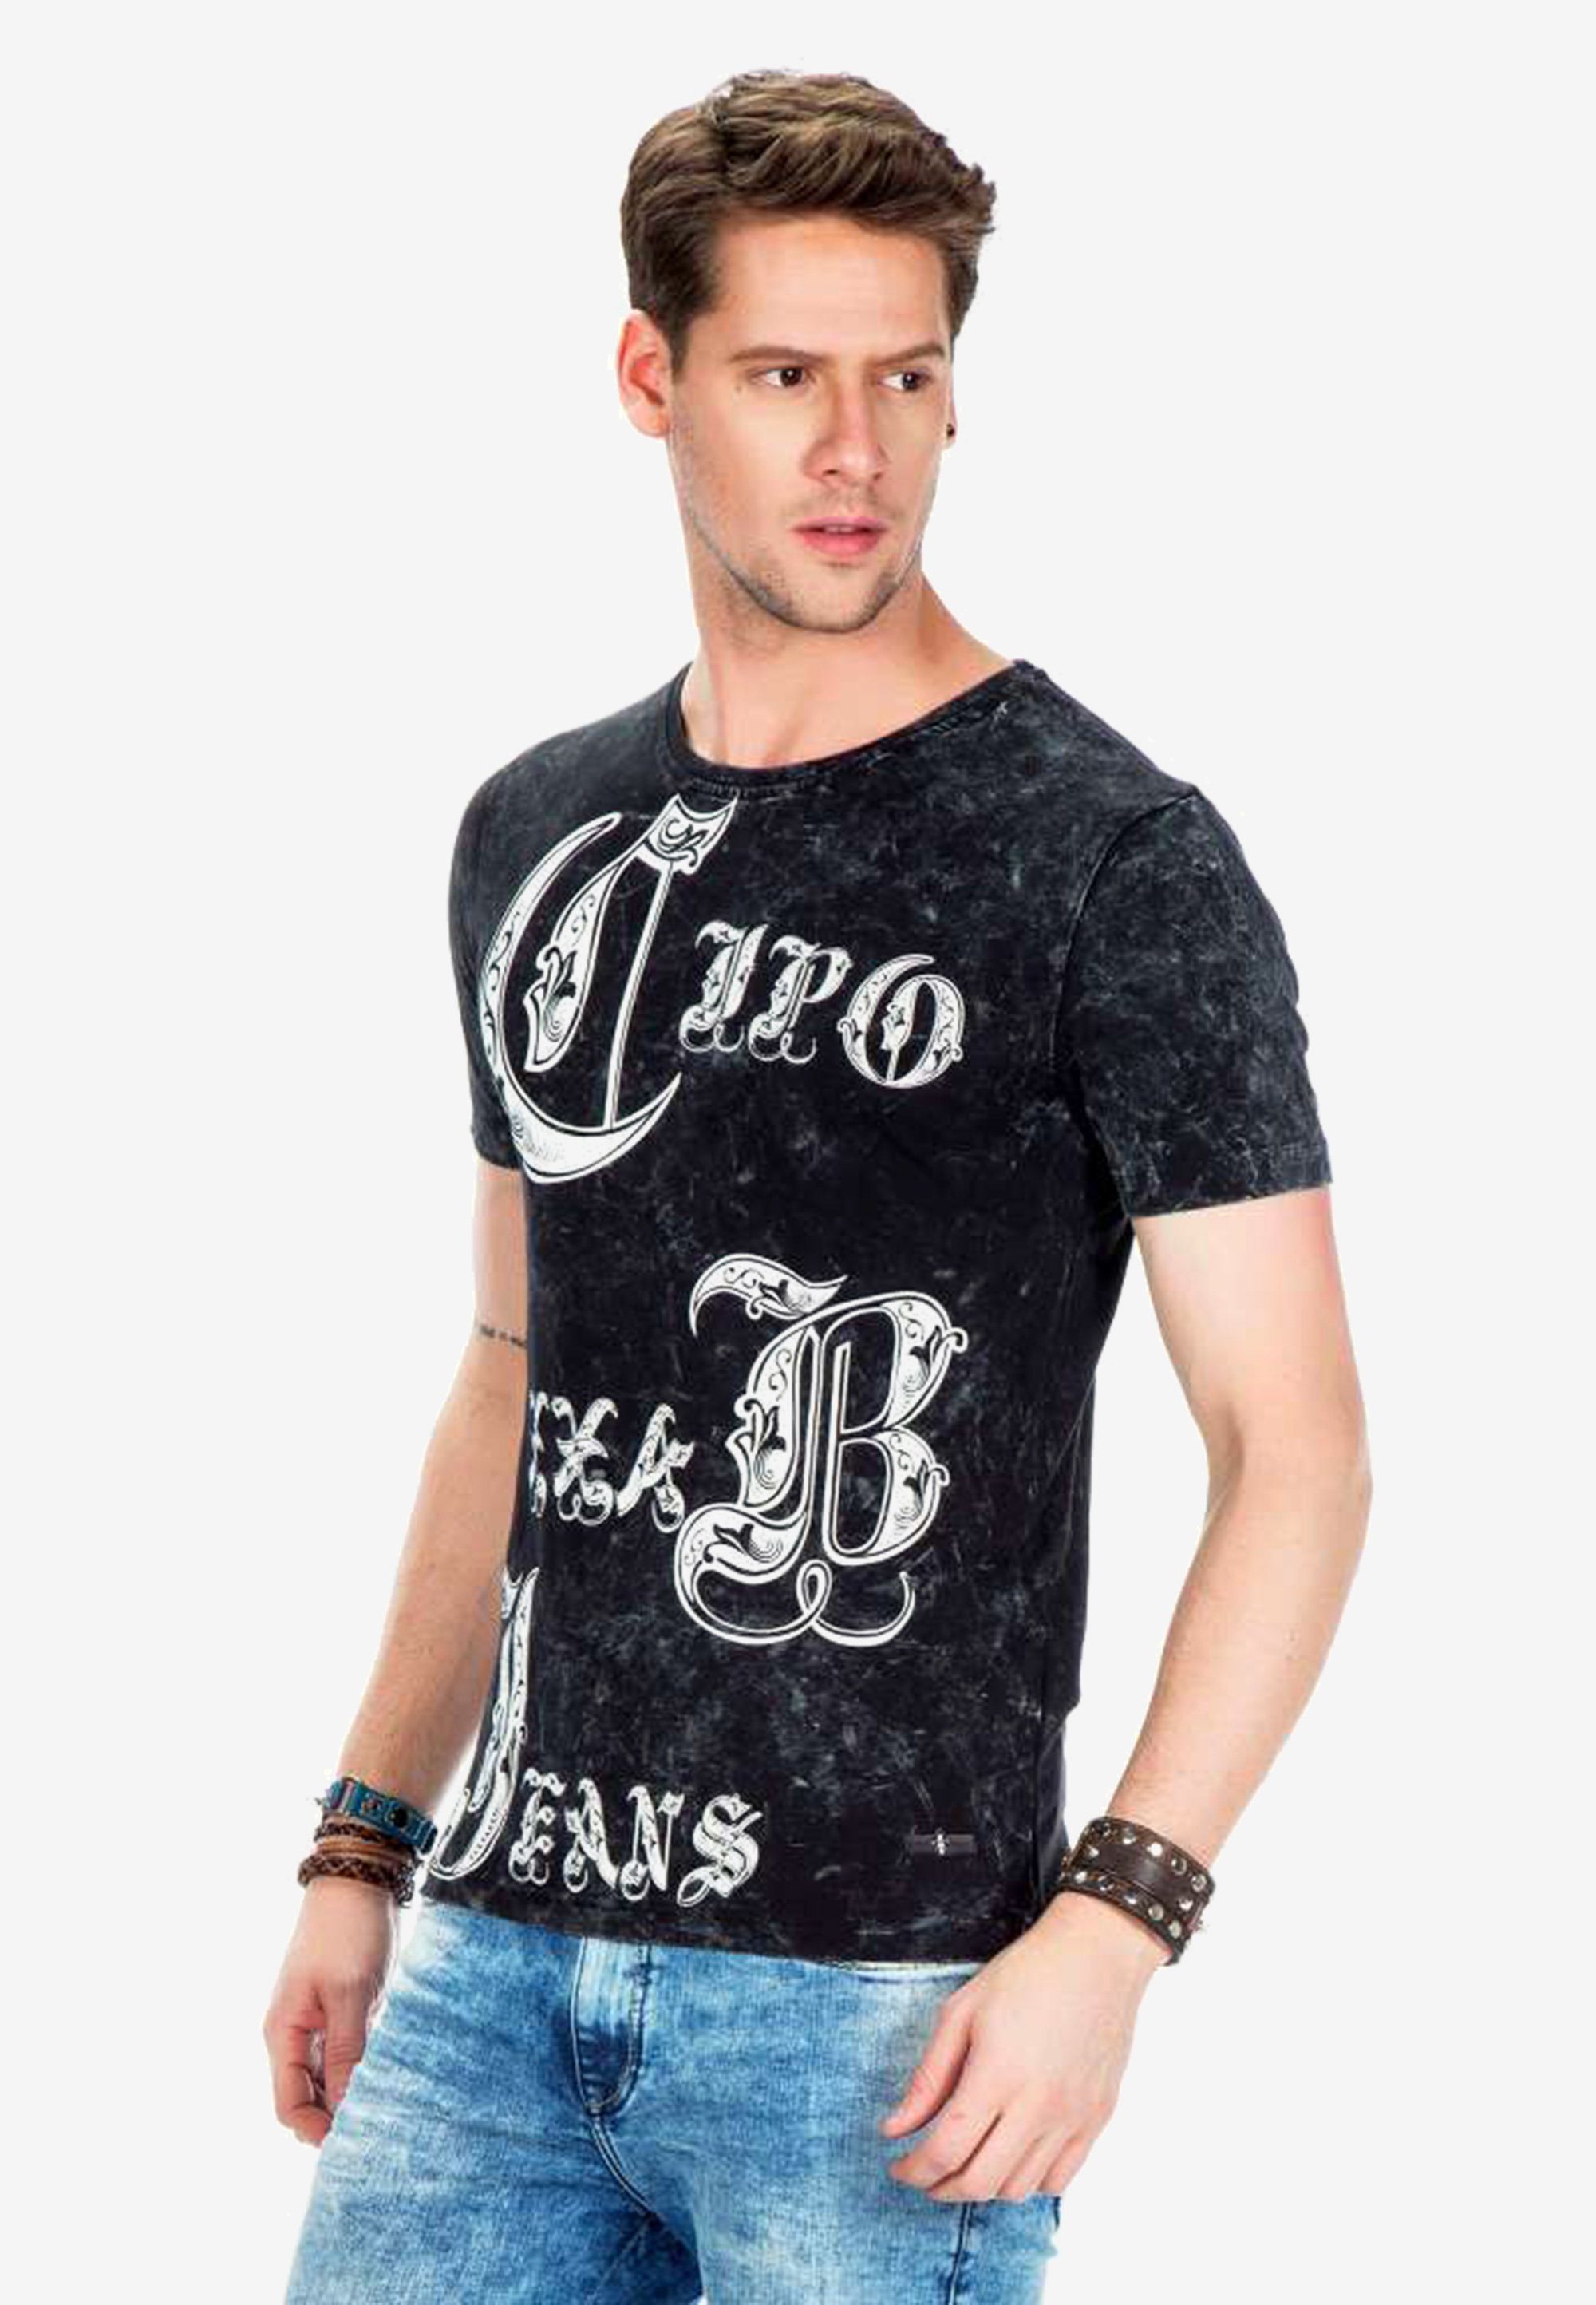 Cipo & Baxx T-Shirt Printmotiven mit stylischen